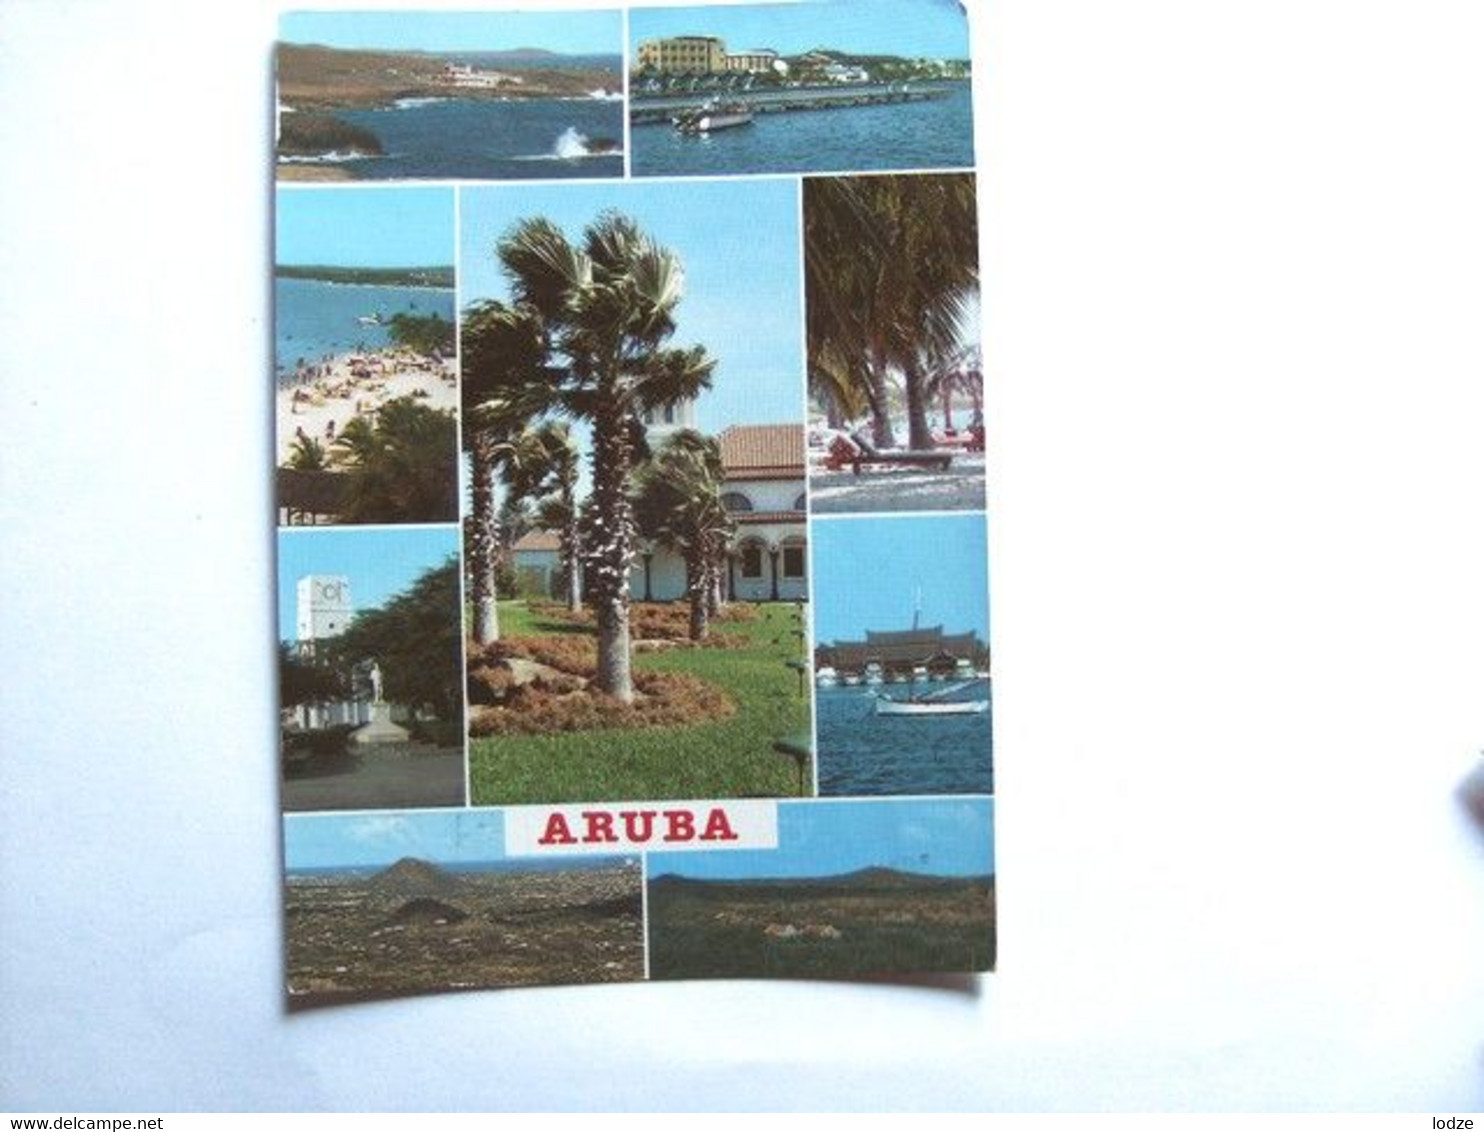 Aruba With Some Nice Views - Aruba